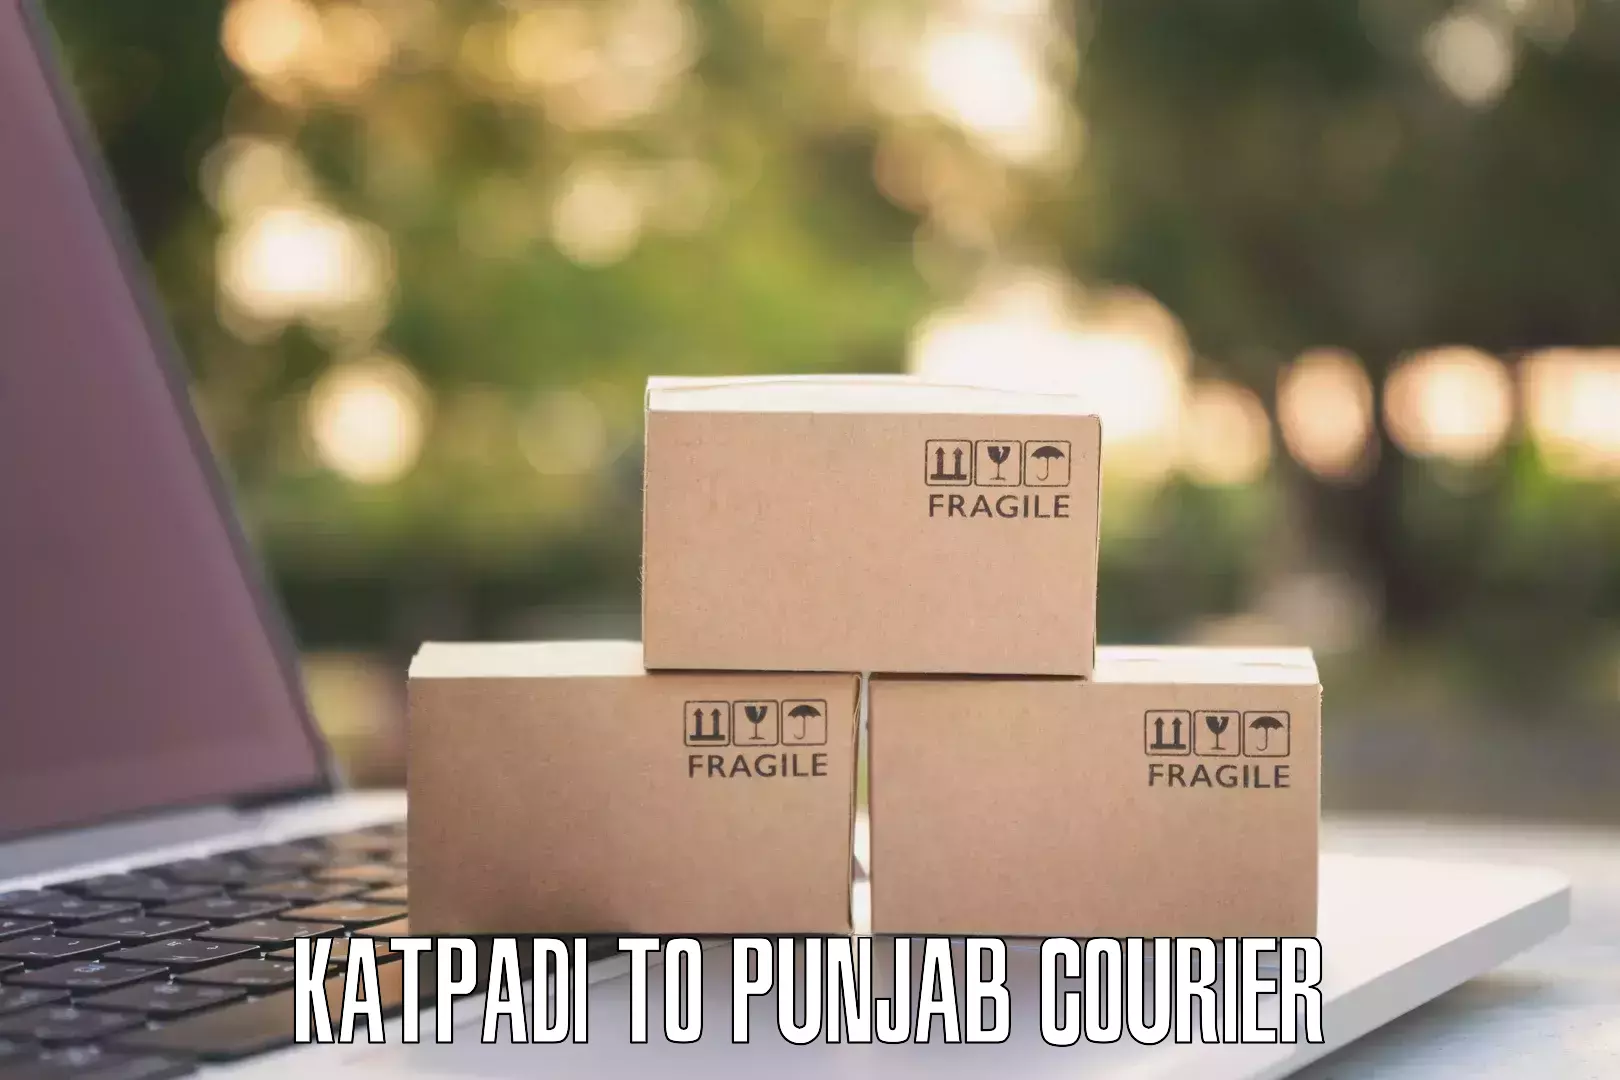 Corporate courier solutions Katpadi to Hoshiarpur